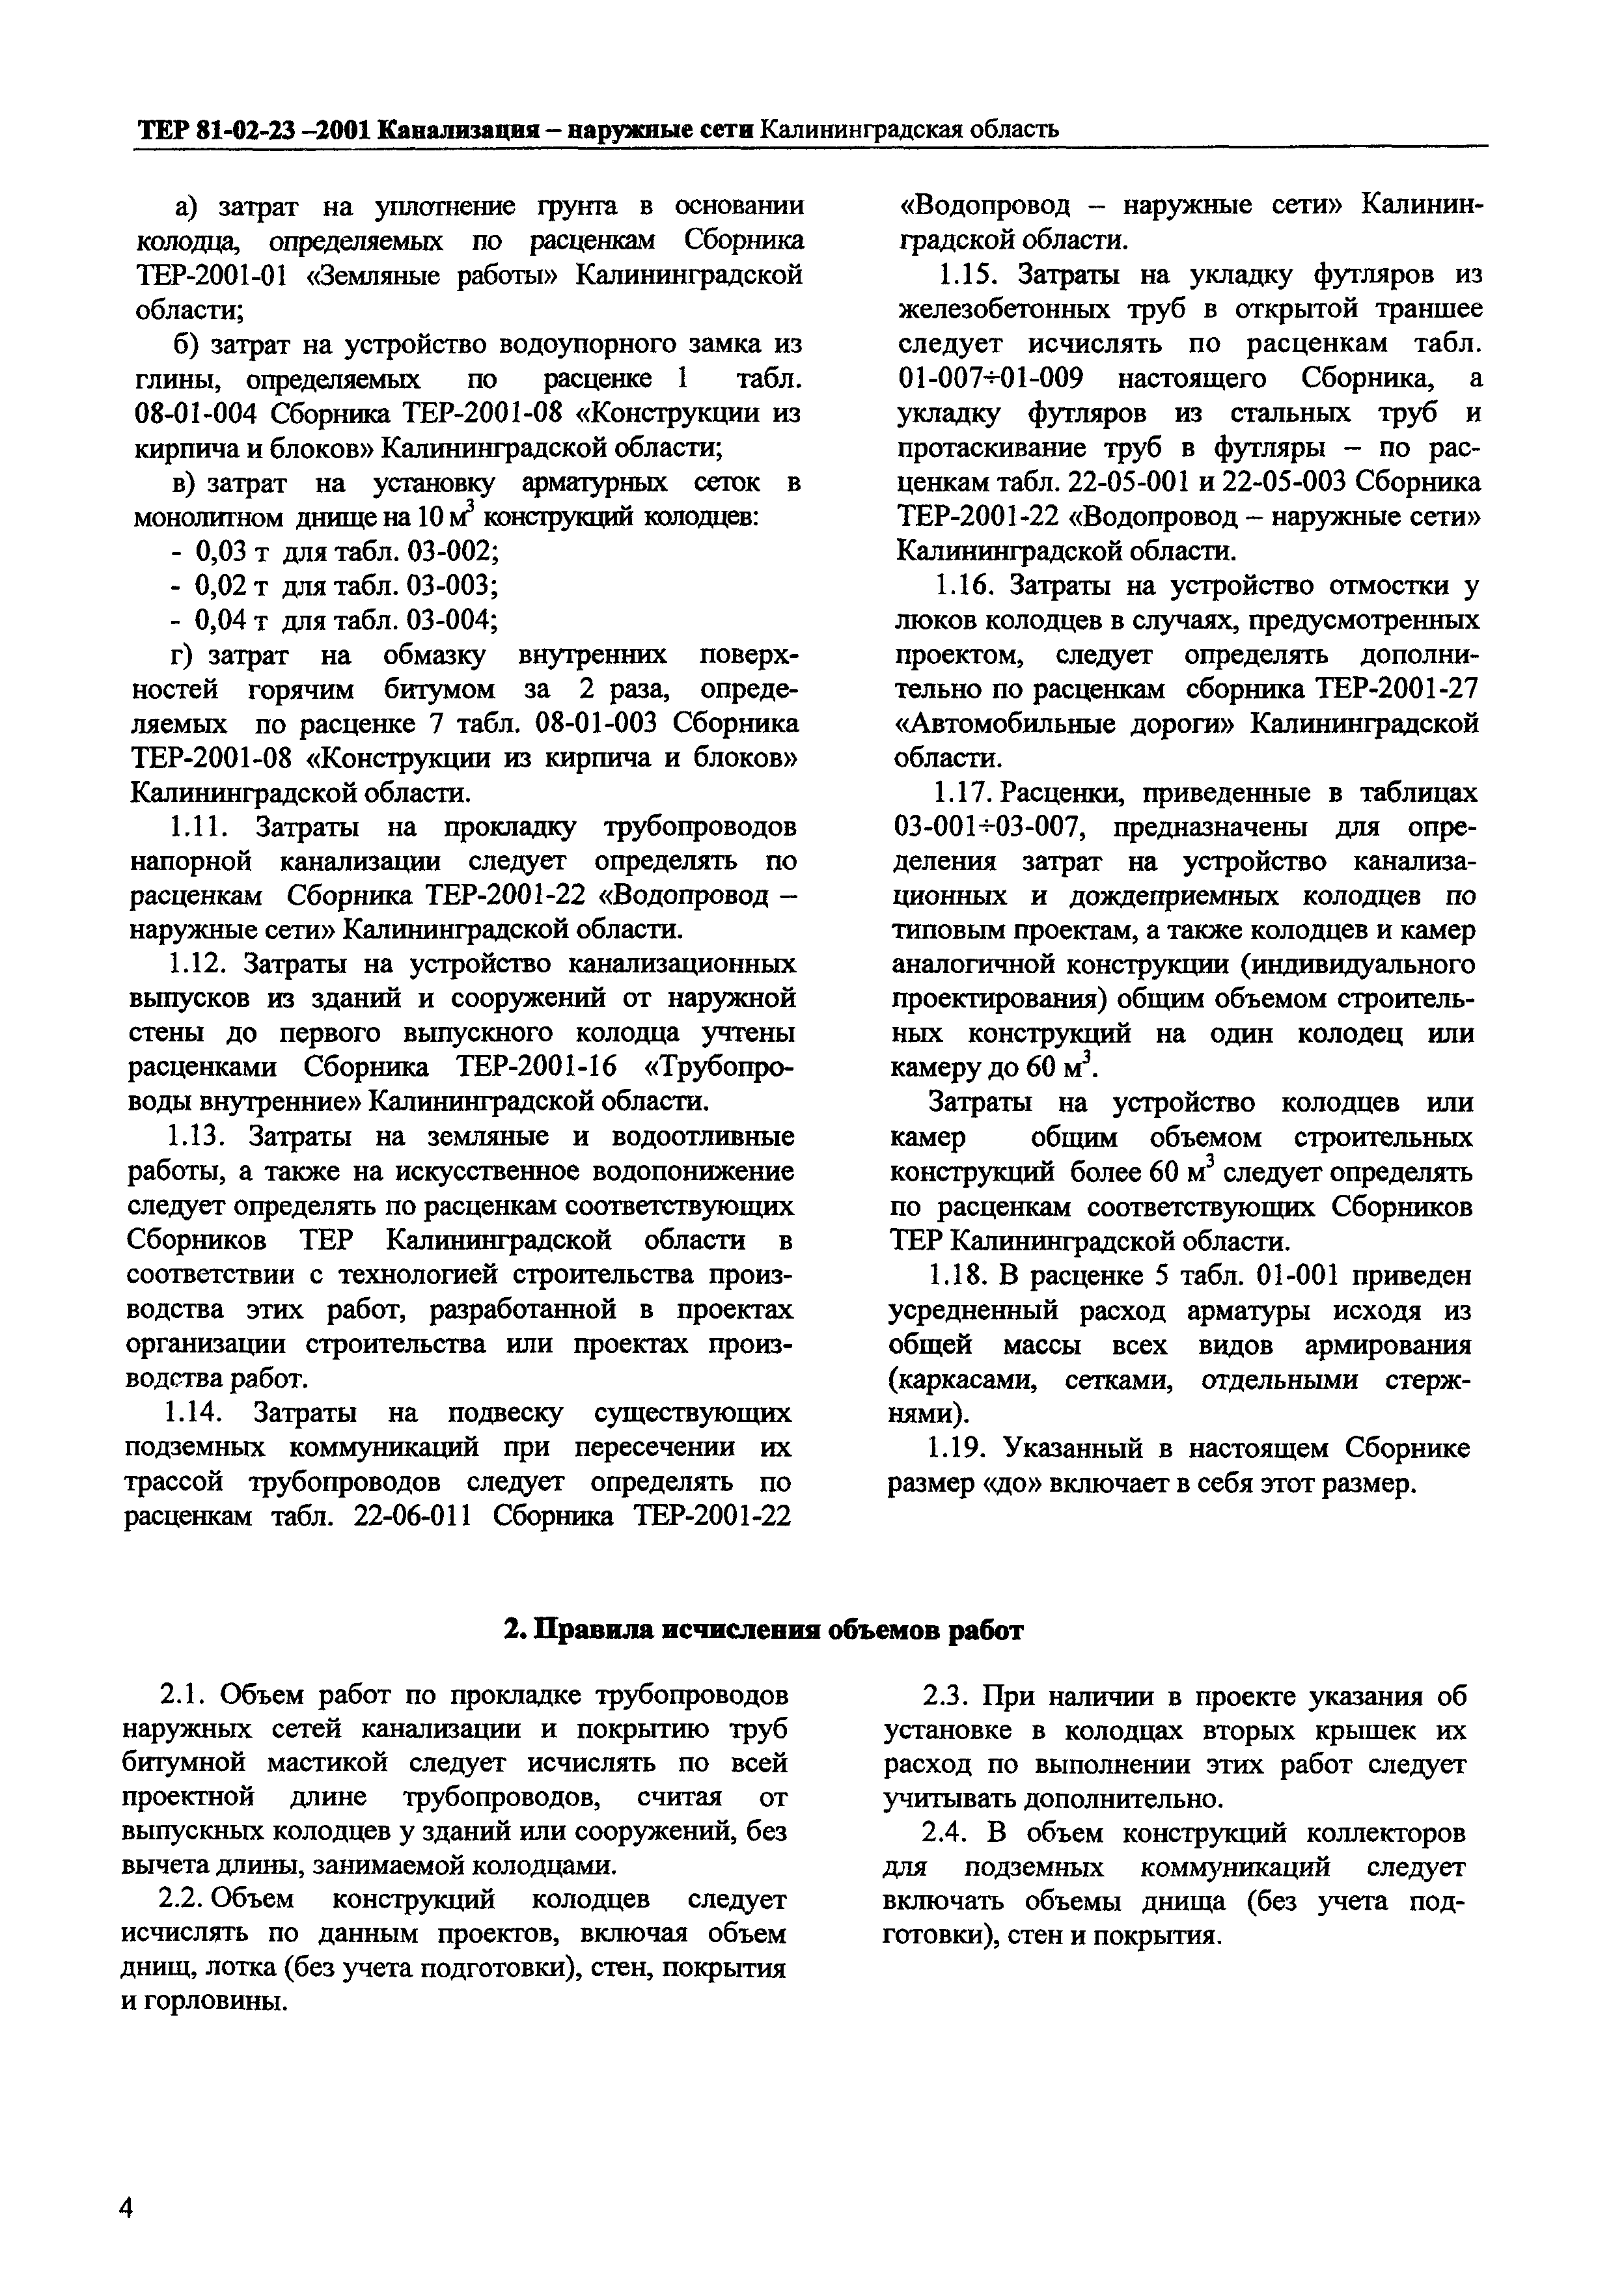 ТЕР Калининградская область 2001-23